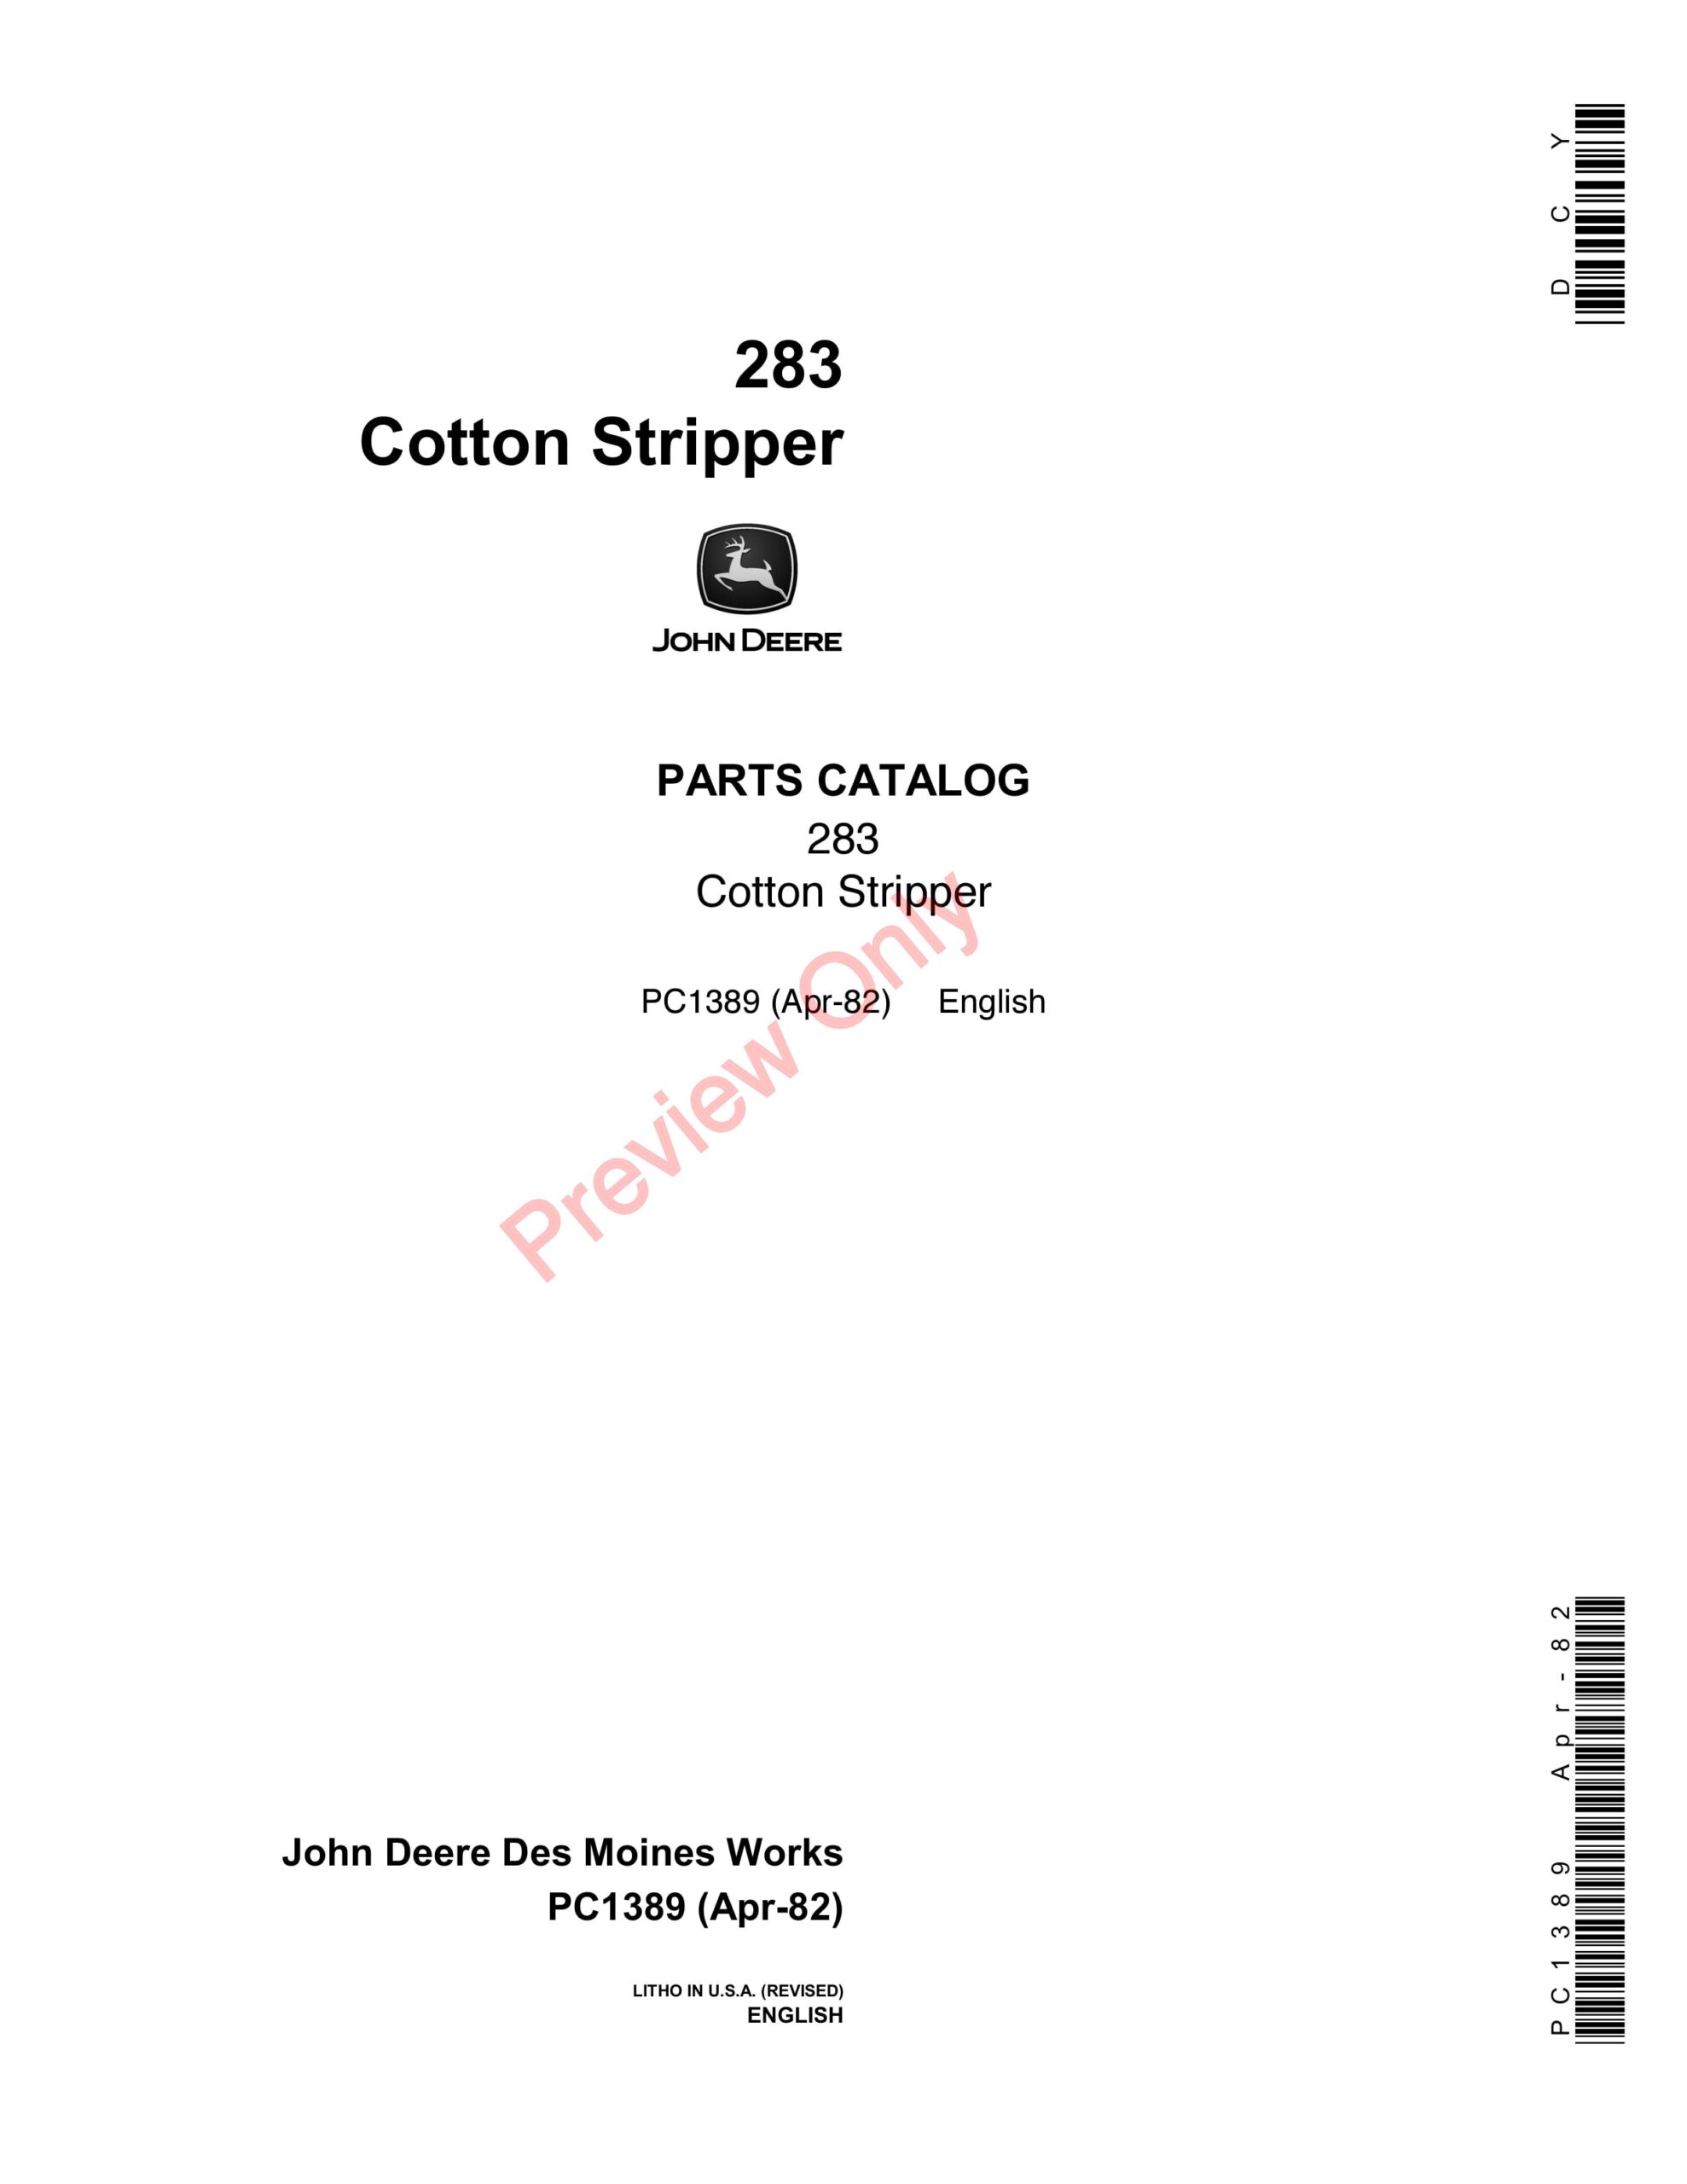 John Deere 283 Cotton Stripper Parts Catalog PC1389 13APR82-1